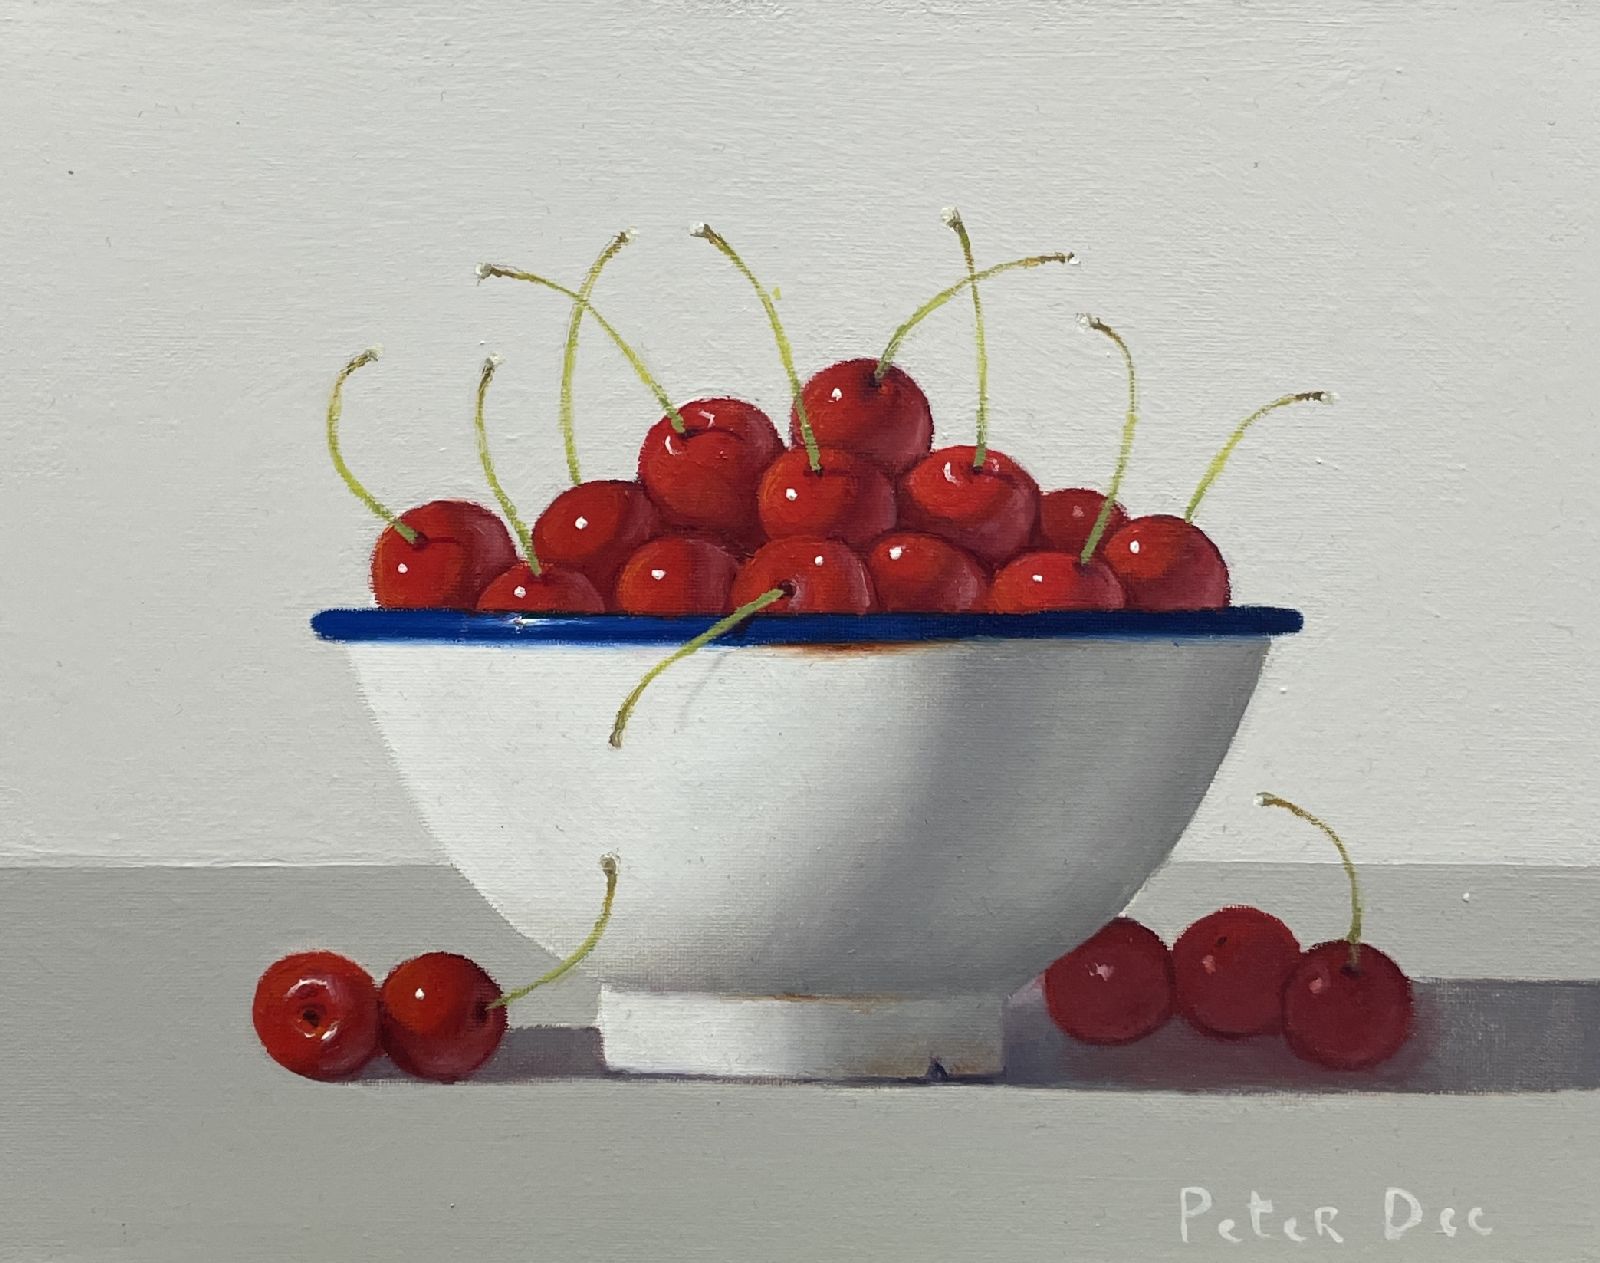 Peter Dee - Bowl of red cherries